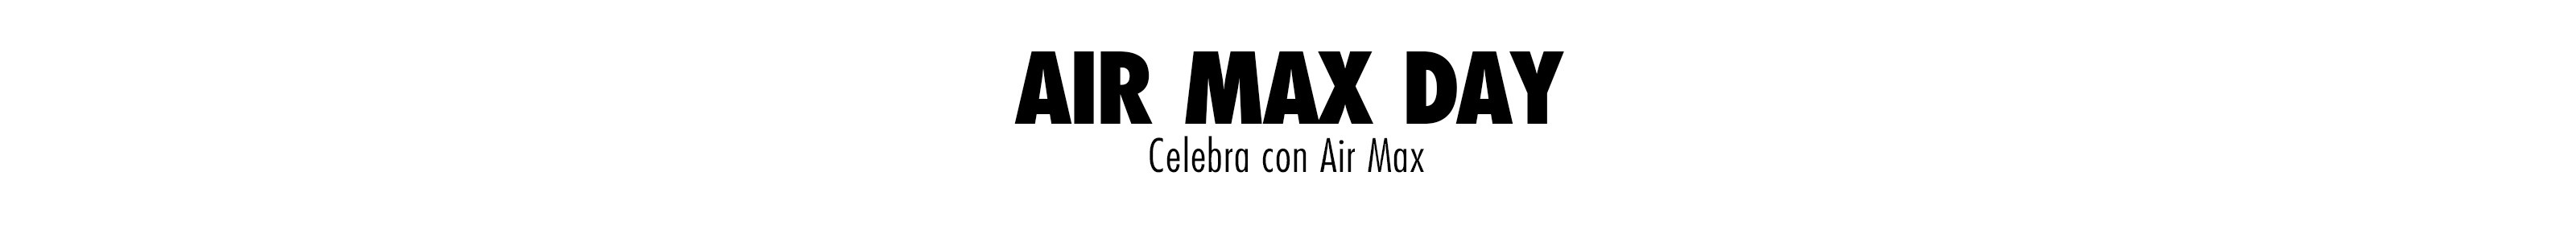 Celebra con Air Max